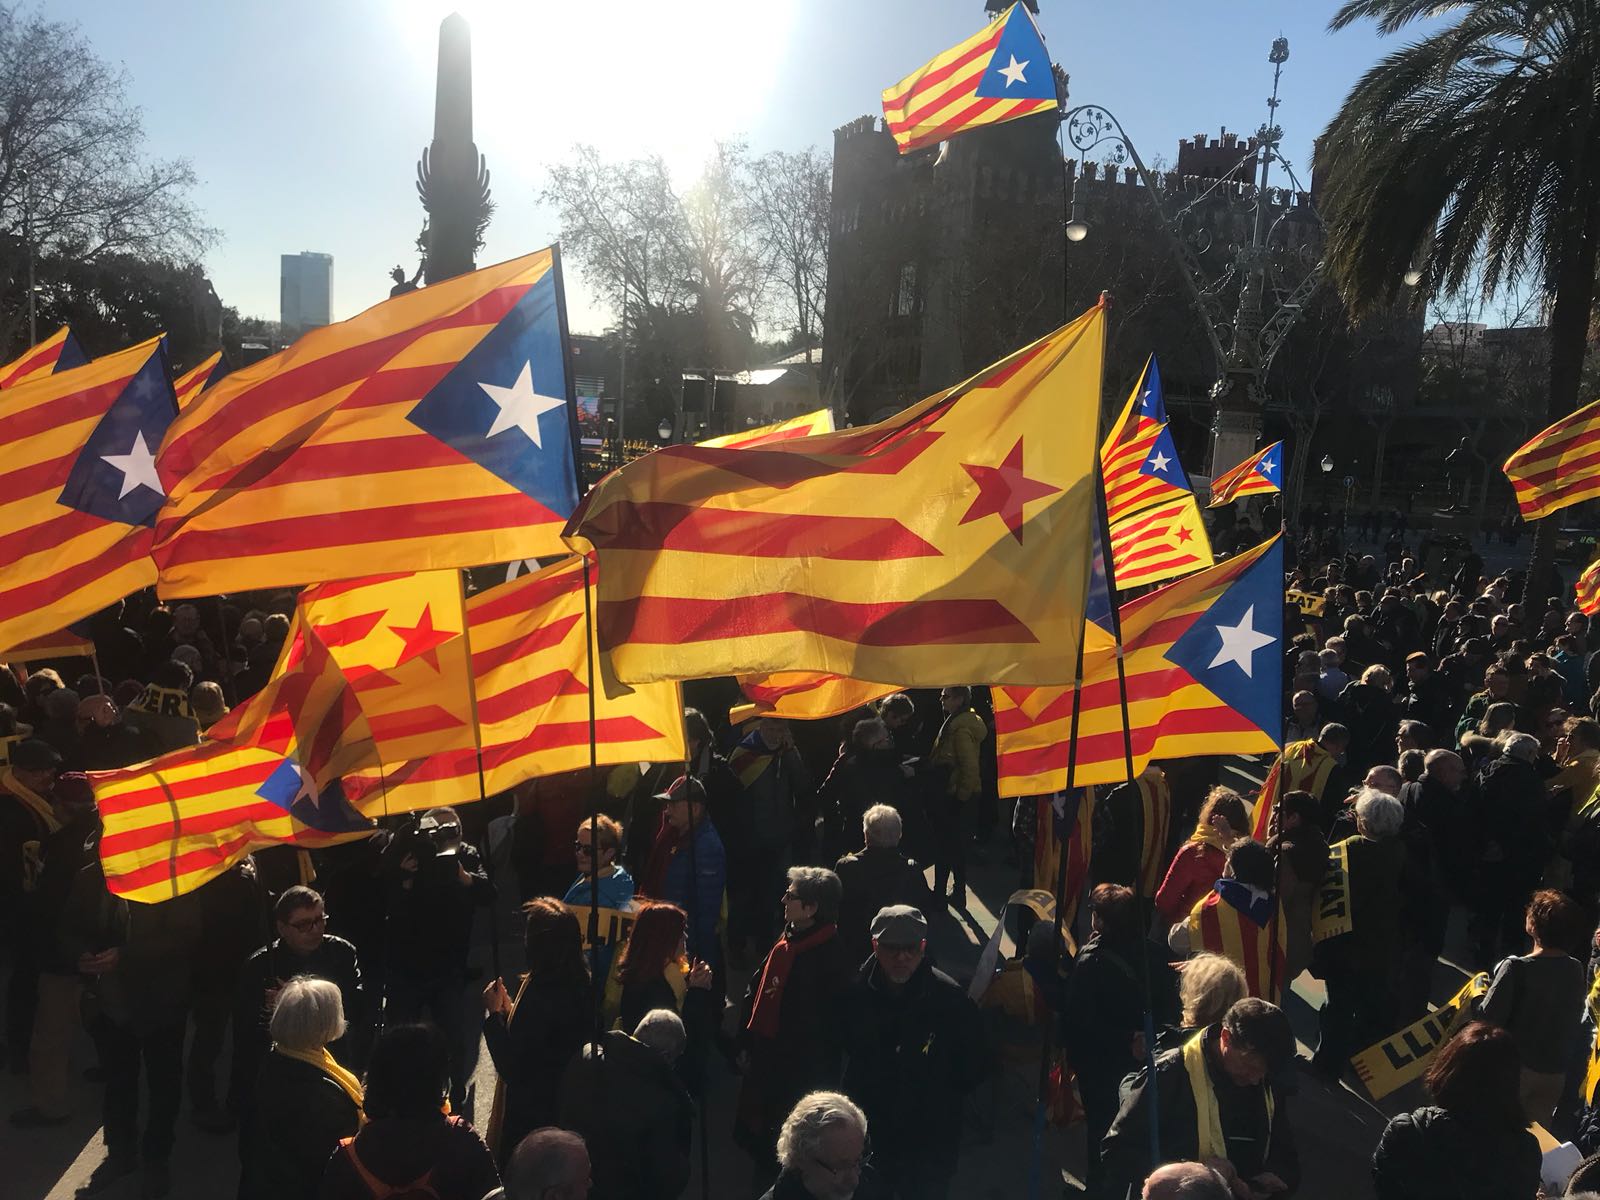 "Los catalanes son perseguidos como los gitanos", según un líder de opinión de la India